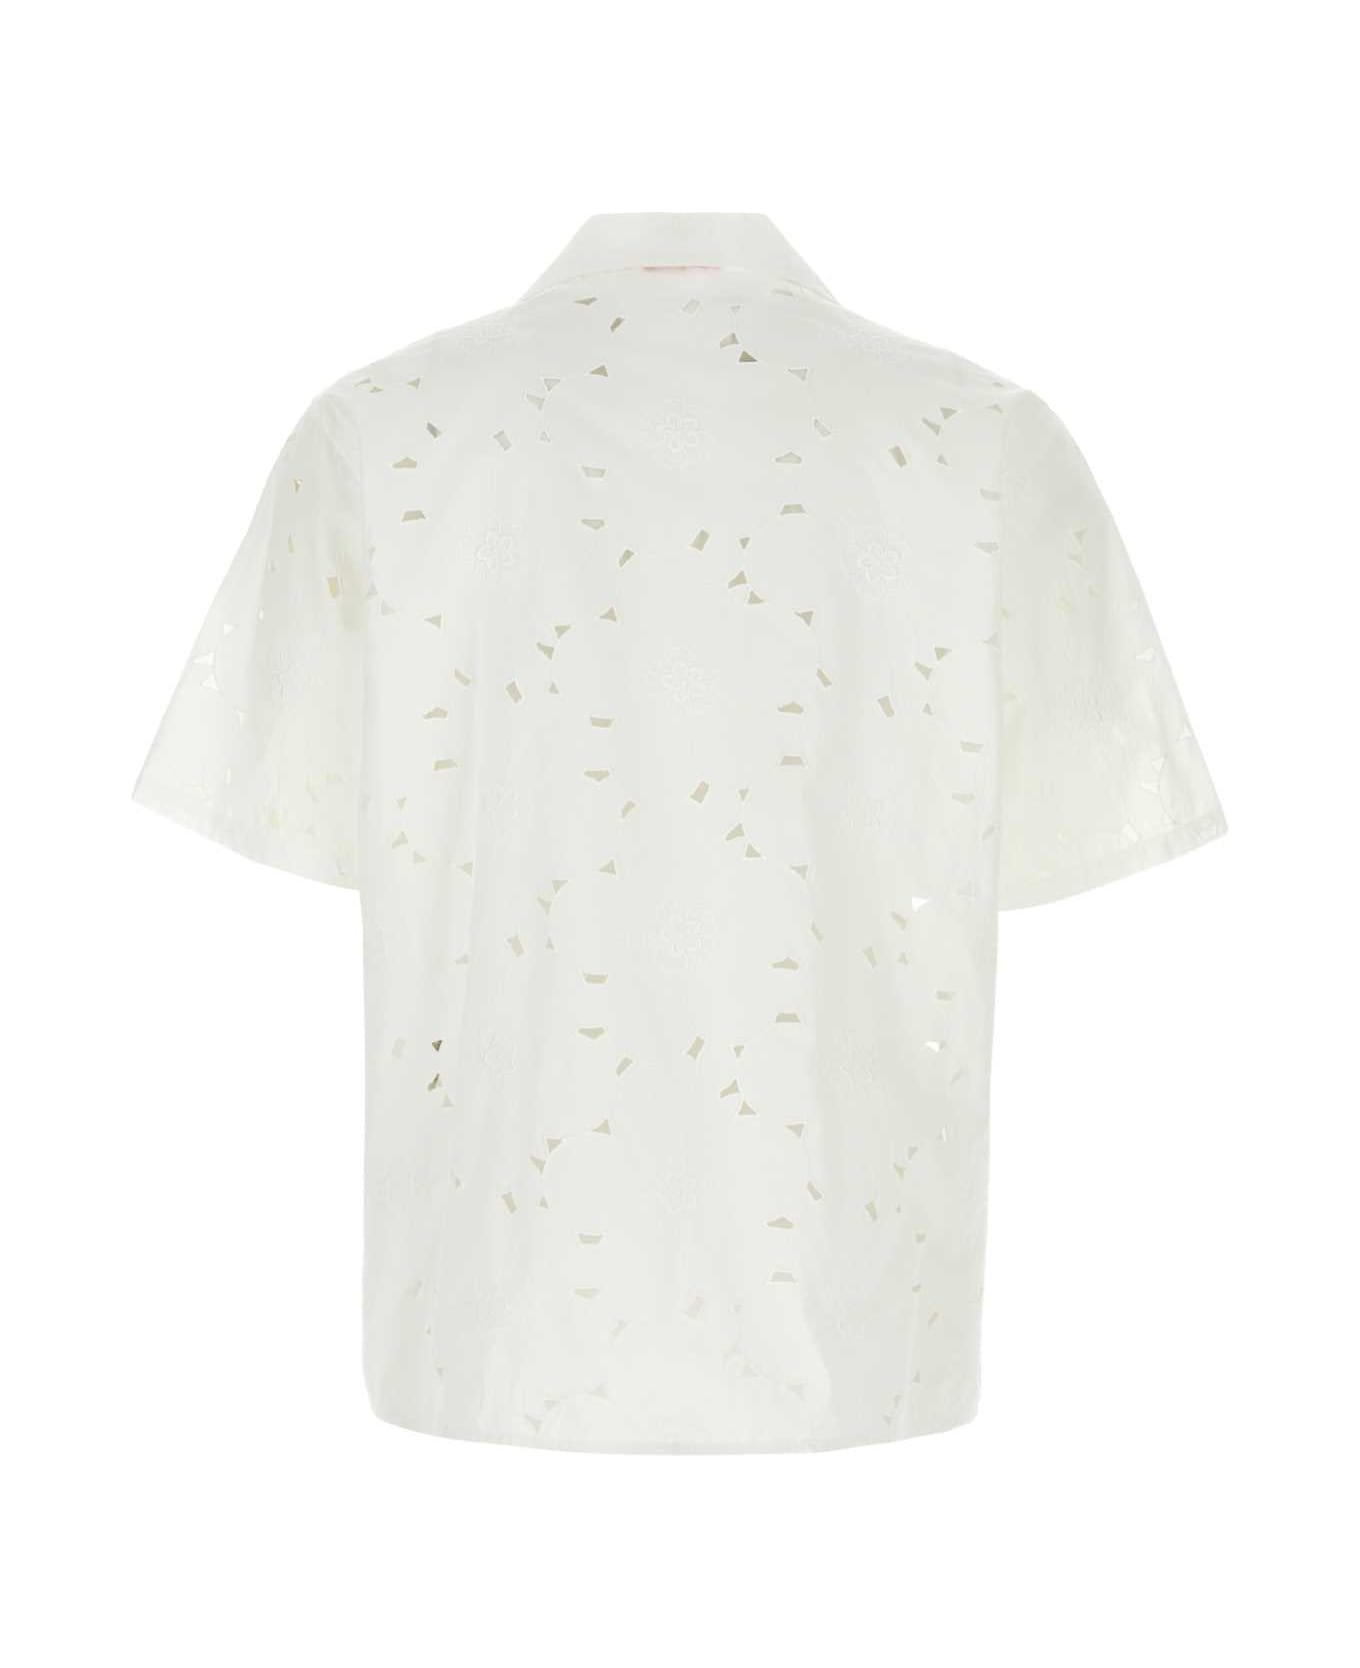 Valentino Garavani White Cotton Blend Shirt - BIANCO